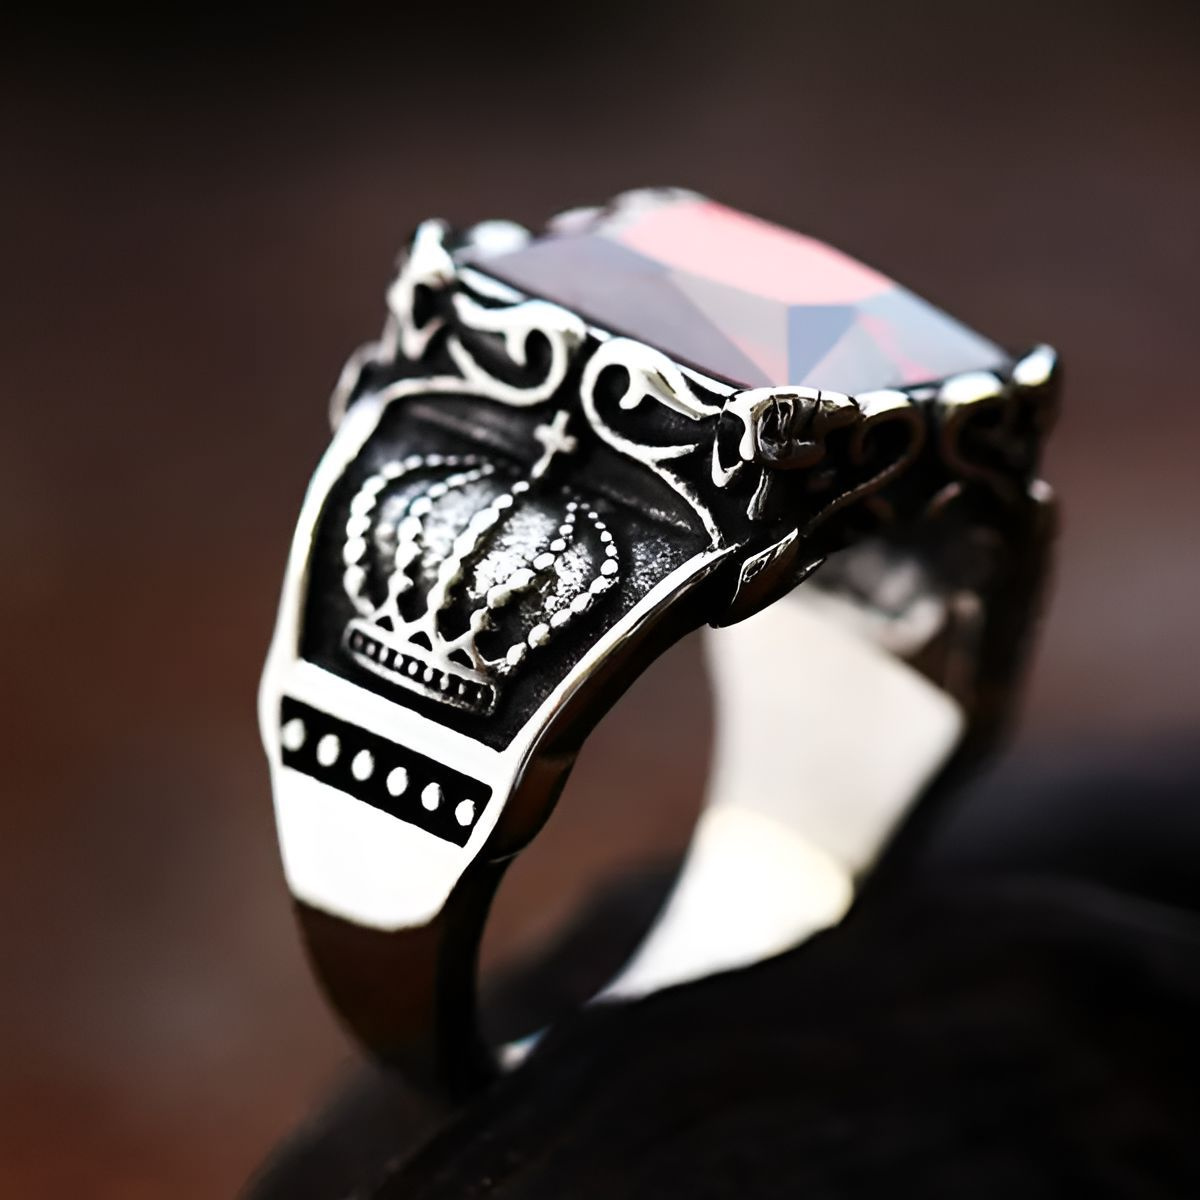 Кольцо рубин; кольцо гранат серебро; кольцо с красным камнем; кольцо гранатовое; кольцо рубин серебро; кольцо рубиновое; кольцо с гранатом; кольцо с рубином; перстень с рубином; перстень красный; перстень с гранатом; печатка с рубином мужская